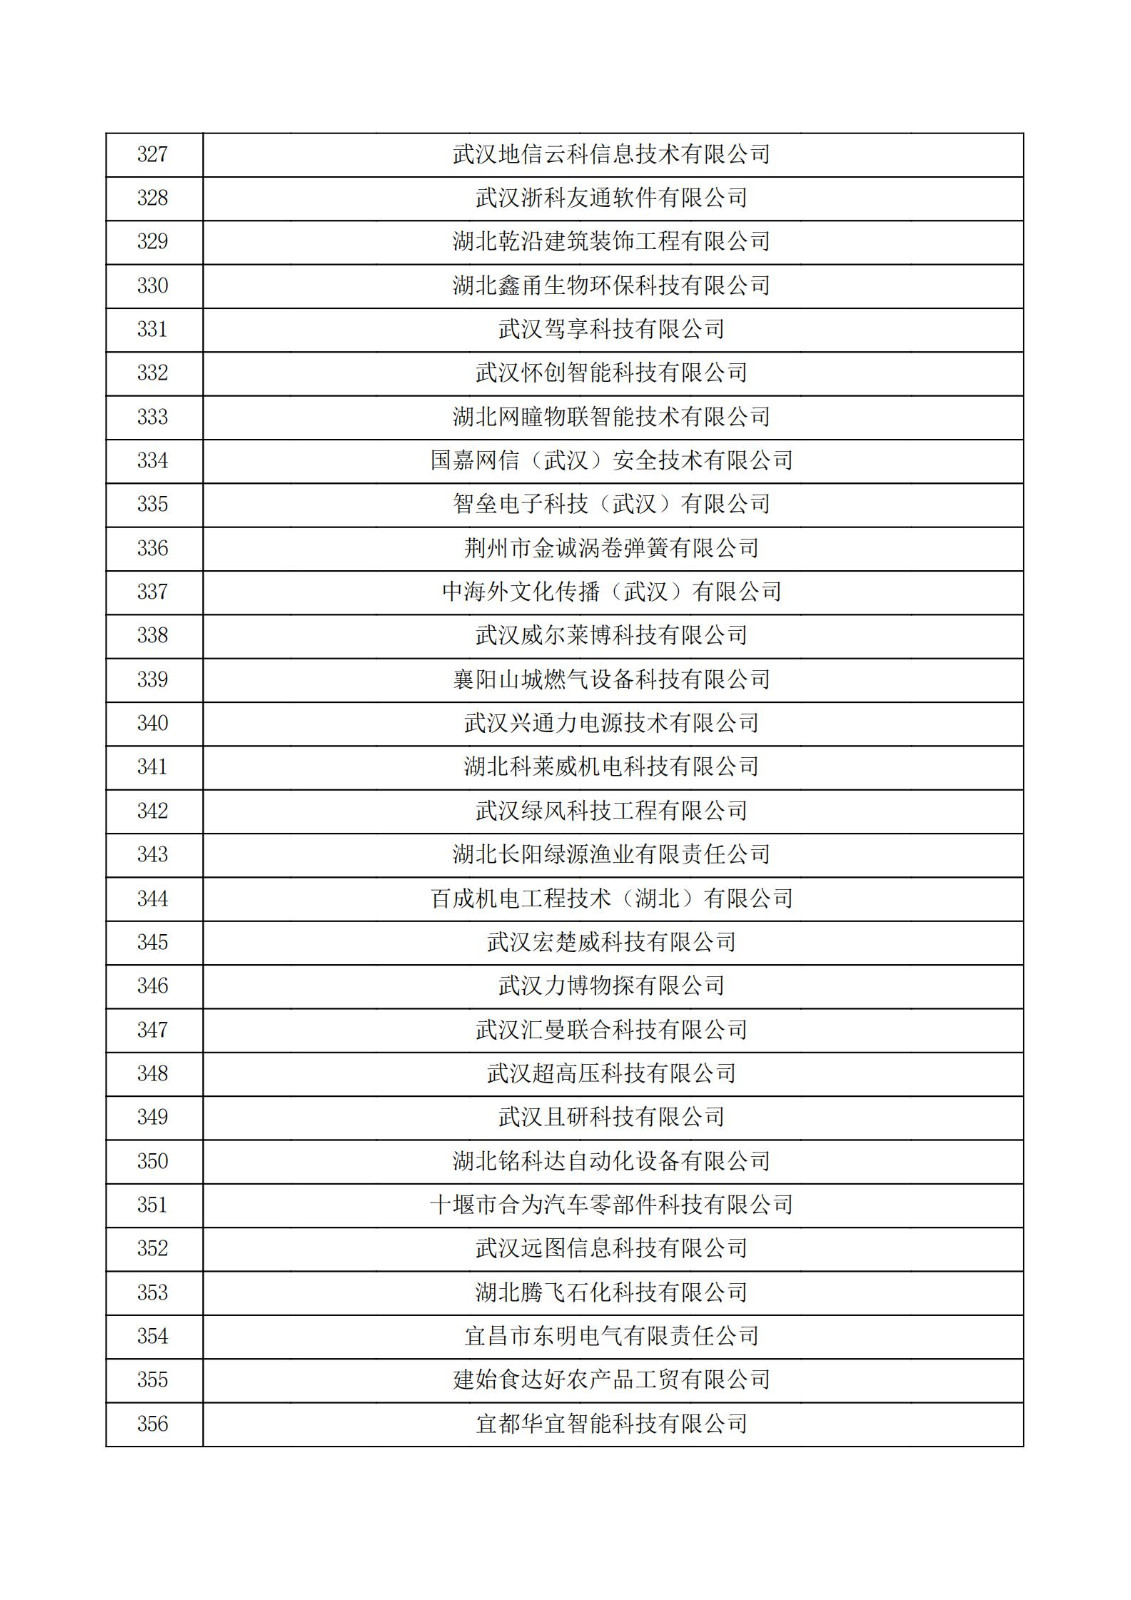 湖北省2021年第二批认定报备高新技术企业名单_11.jpg